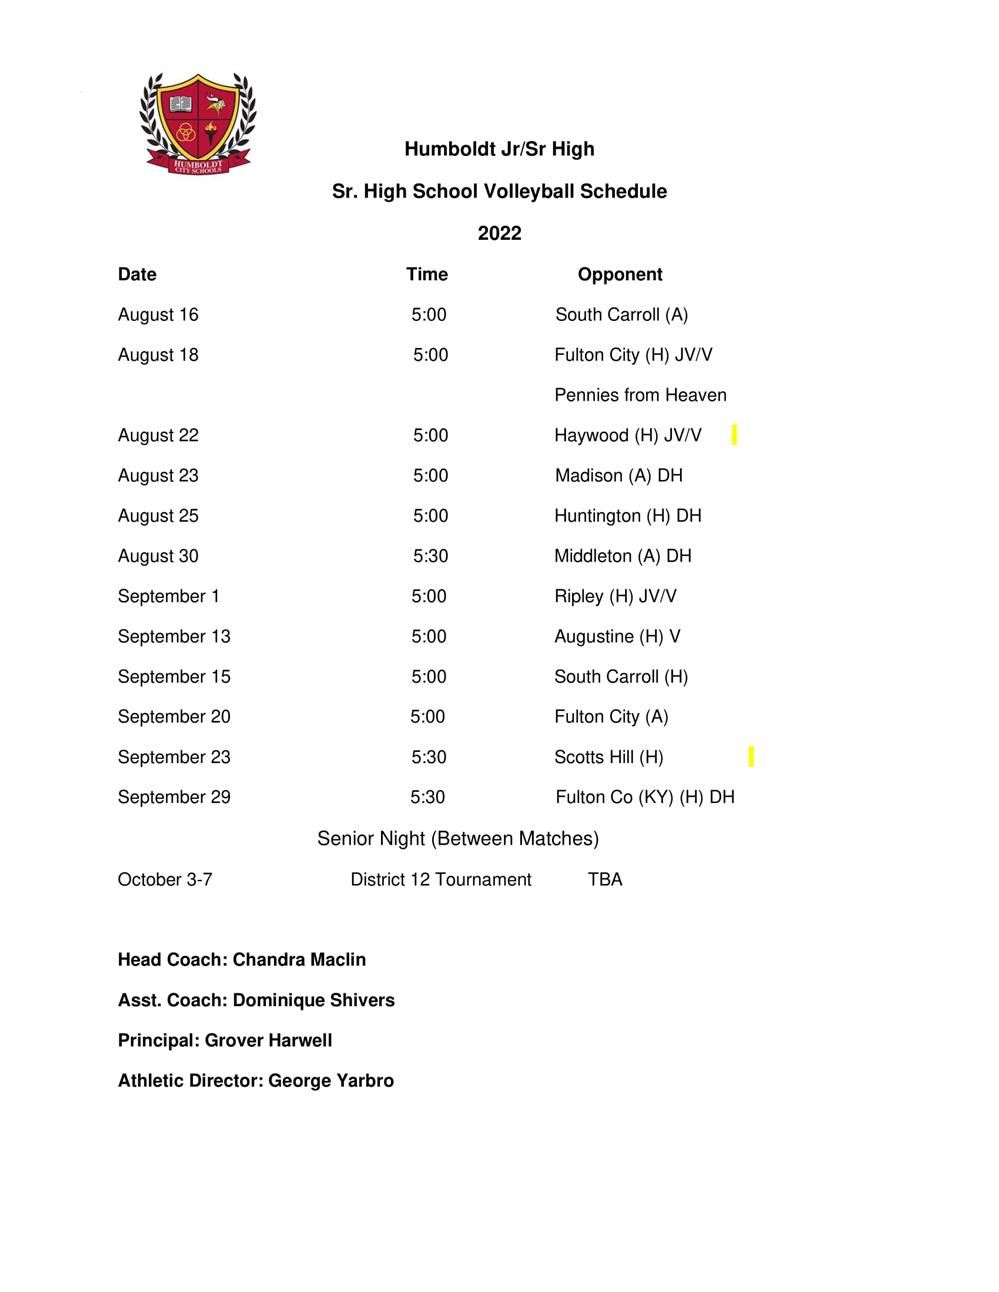 2022 Sr. High Volleyball Schedule